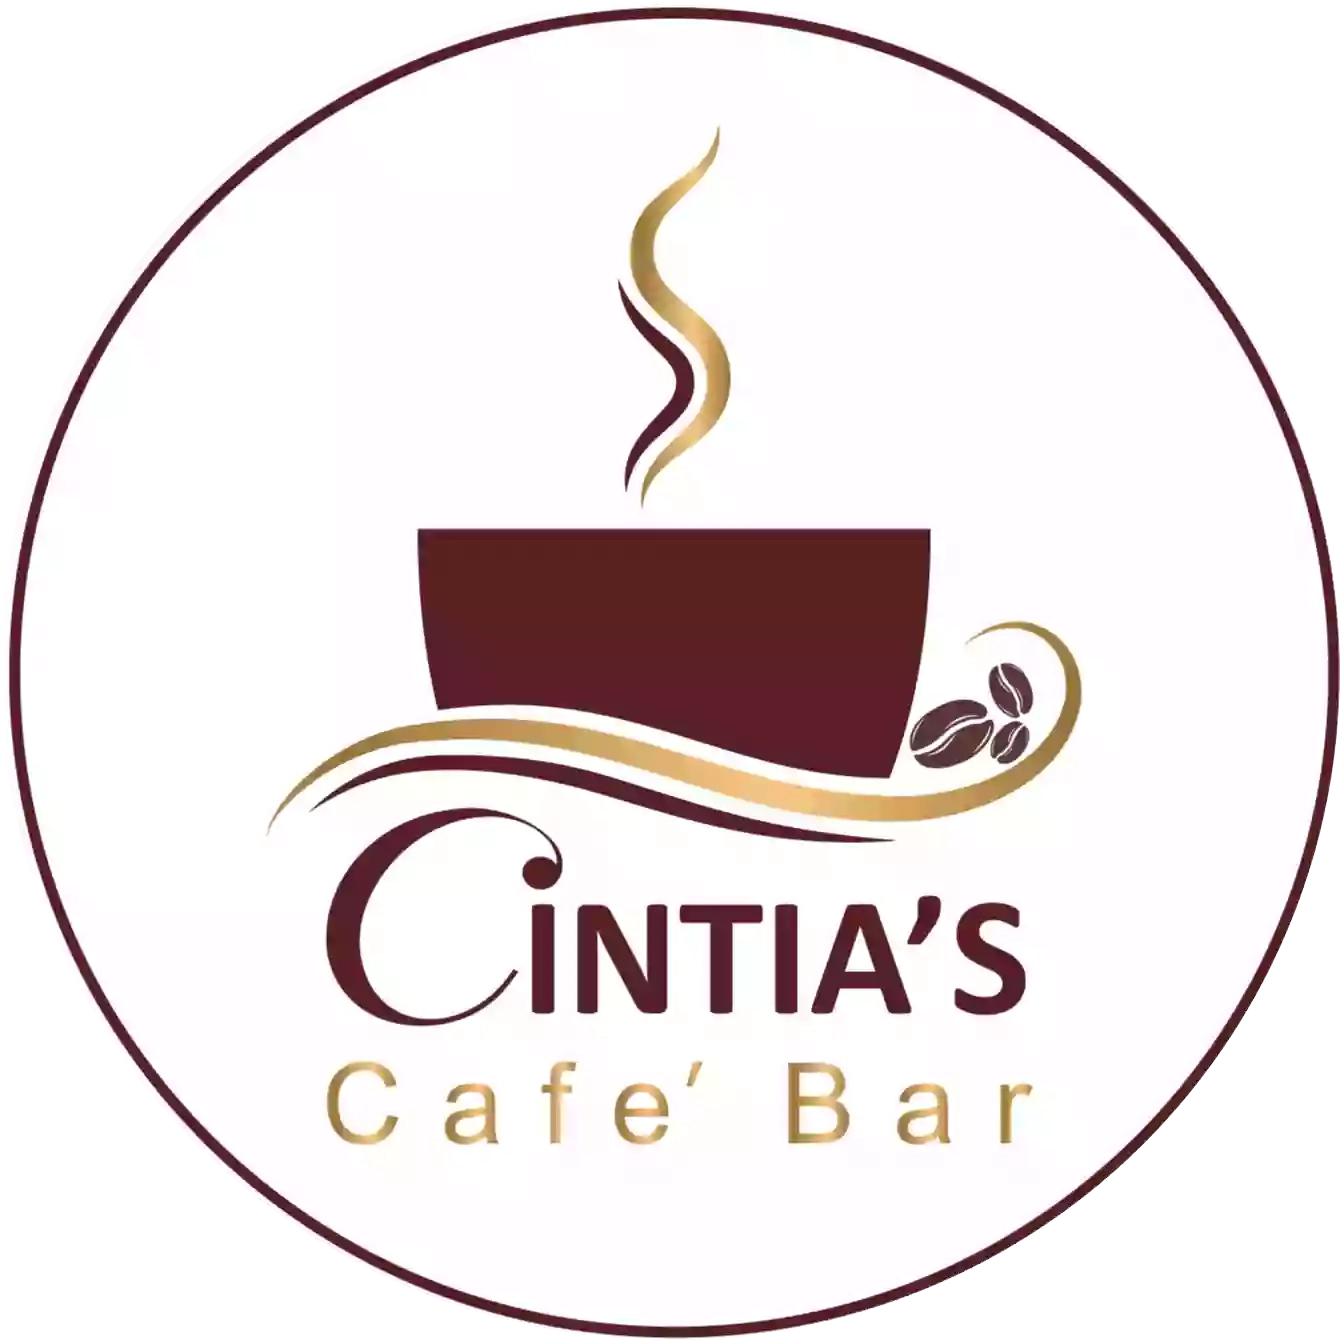 Cintias Cafe Bar